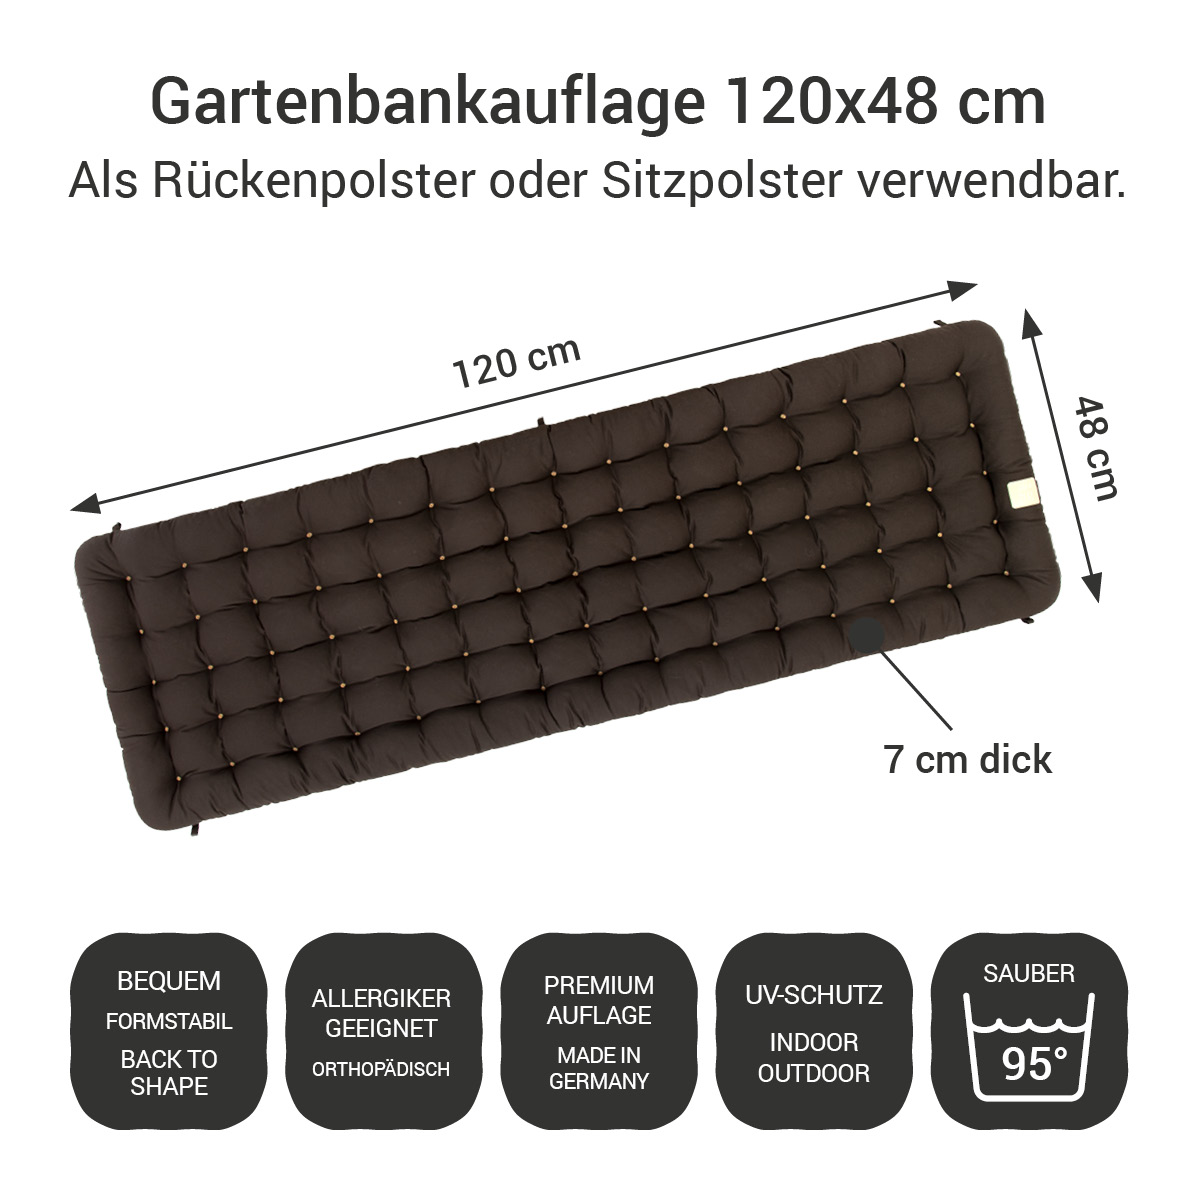 Gartenbank Auflage braun 120x48 cm / 120 x 50 cm | bequem & orthopädisch, komplett im Ganzen waschbar bis 95°C, wetterfest, Made in Germany